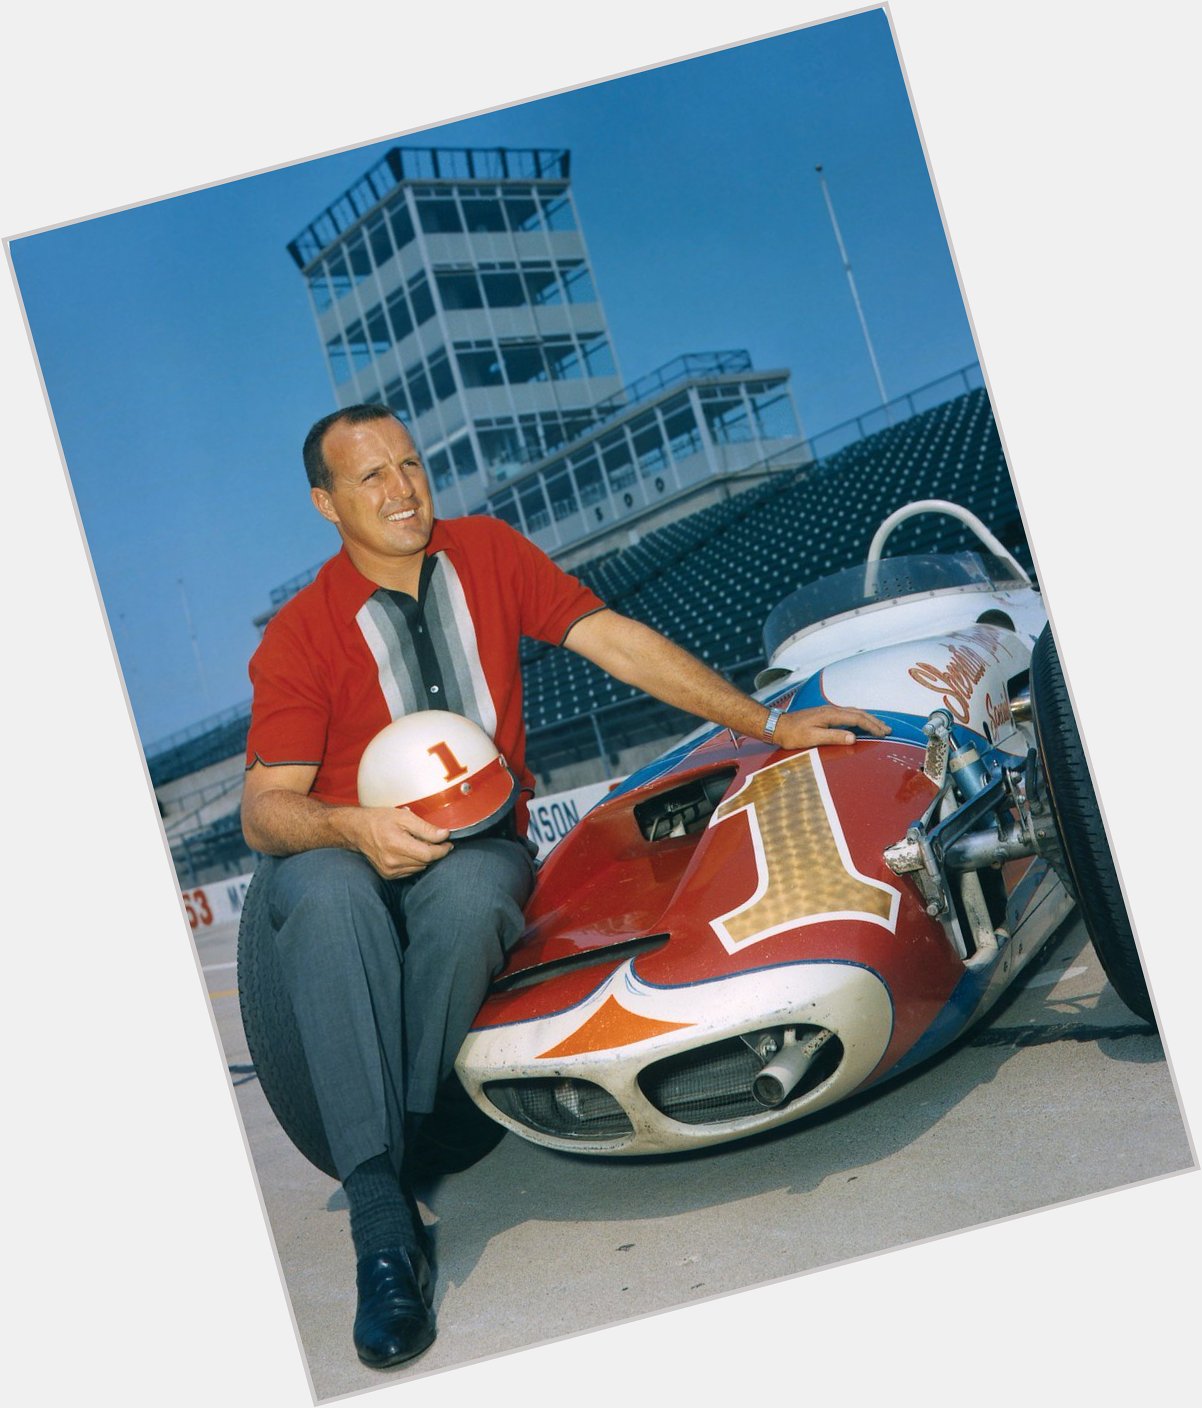 Happy Birthday AJ Foyt.
De racelegende is vandaag 84 jaar geworden! 